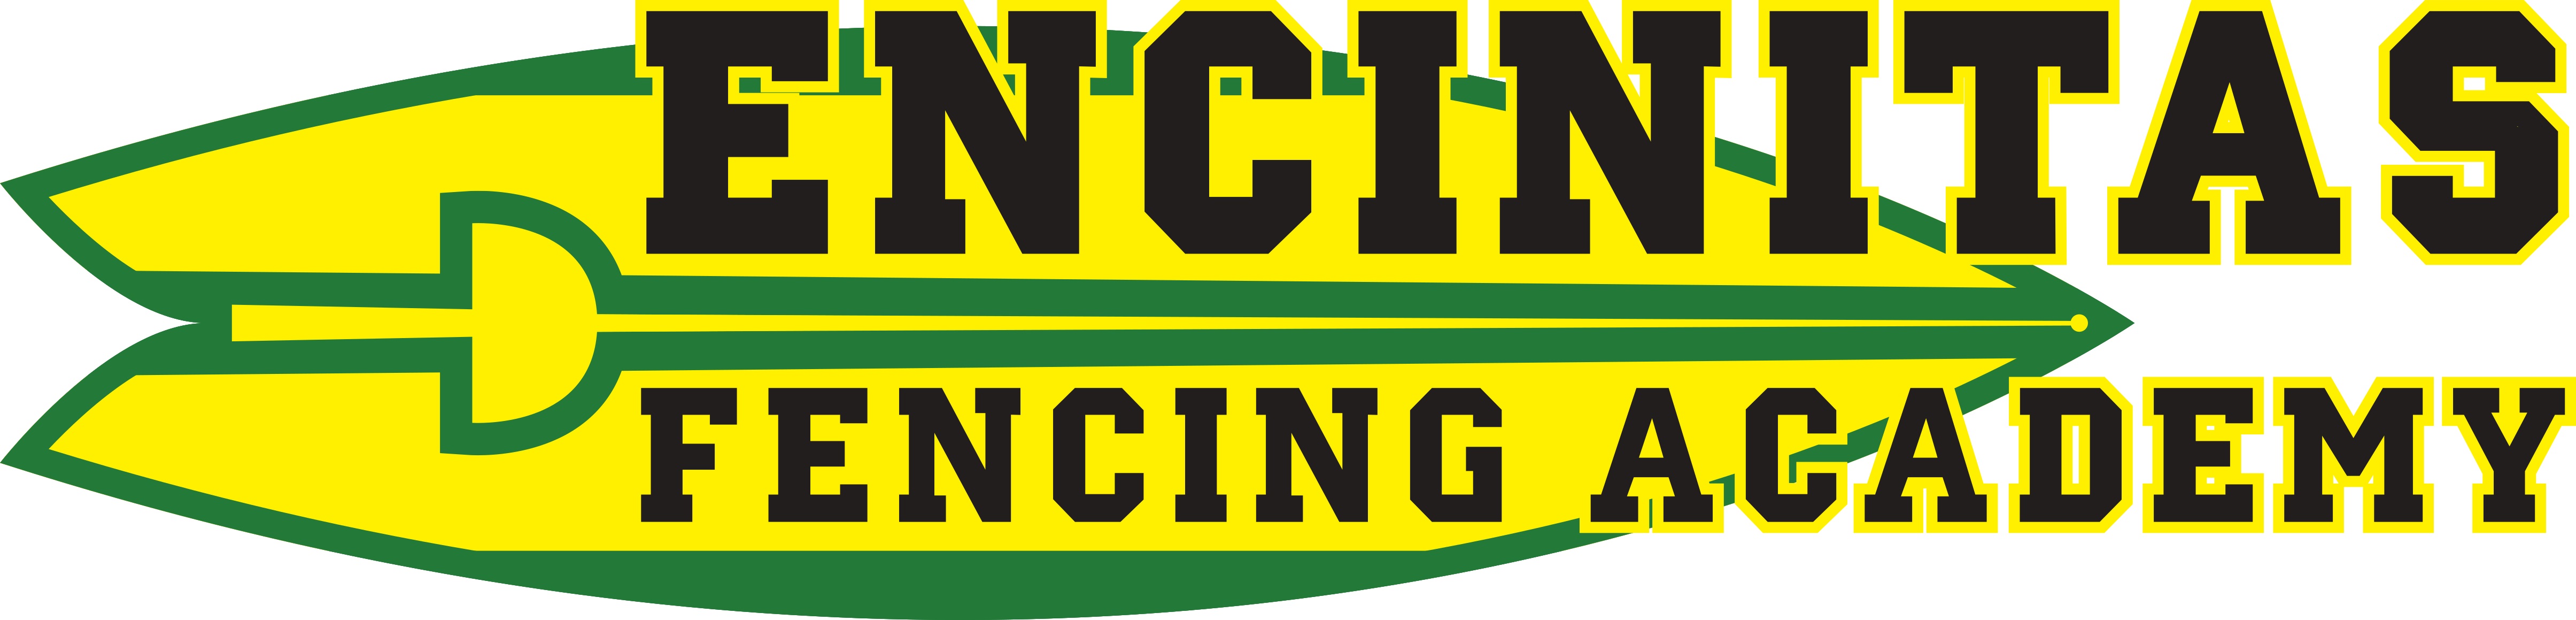 Encinitas Fencing Academy